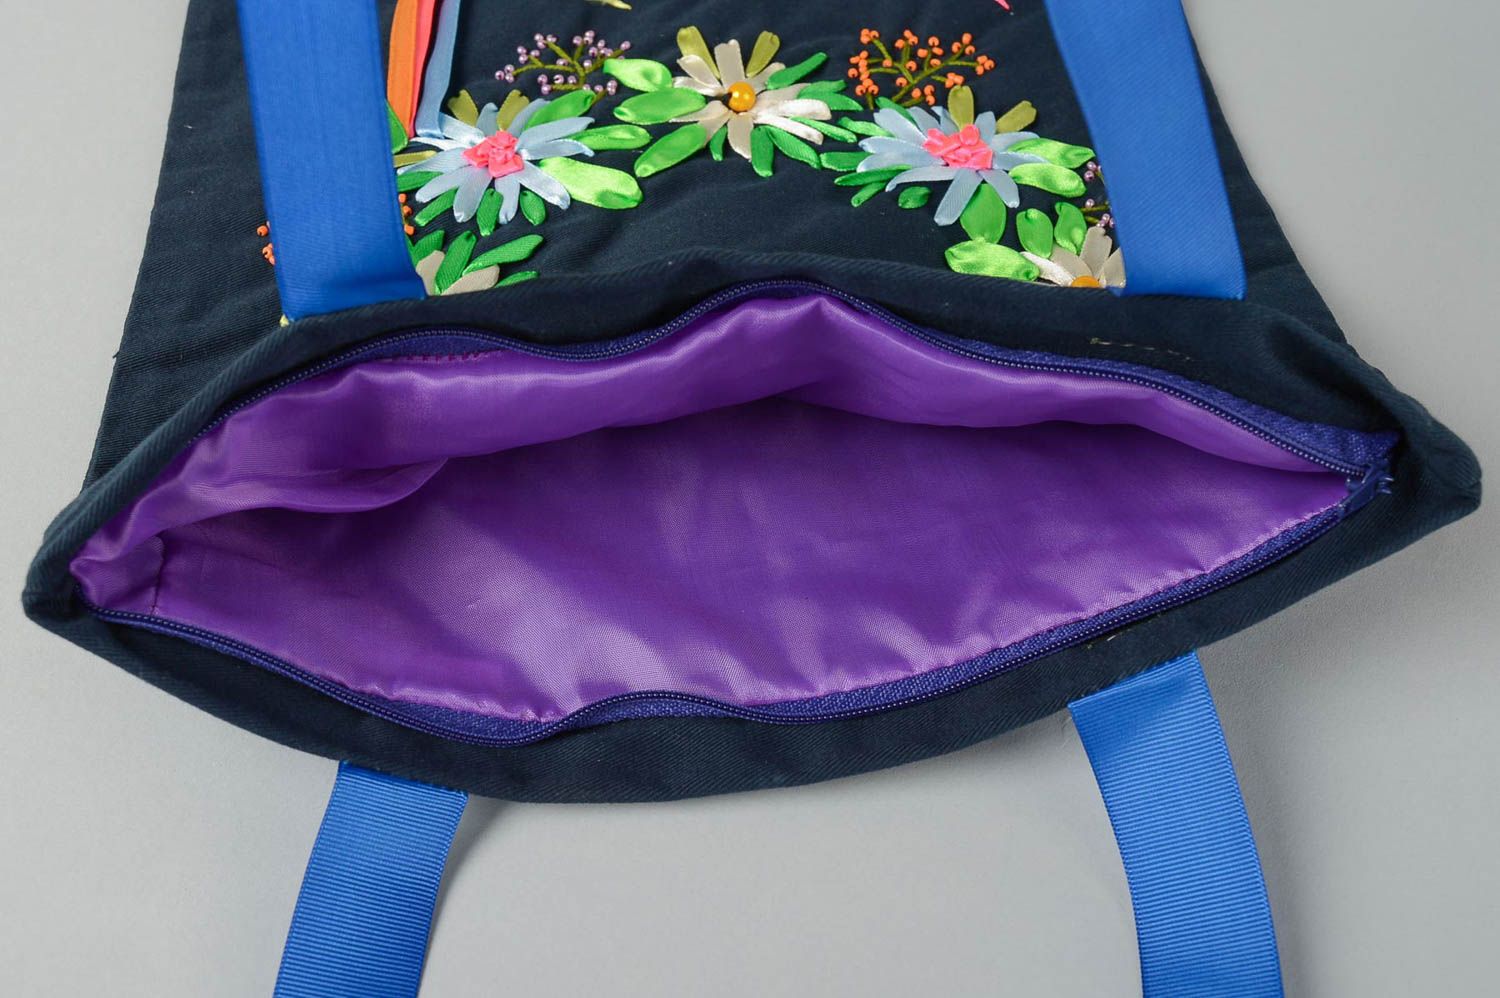 Handmade handbag with embroidery stylish shoulder bag textile handbag for women photo 4